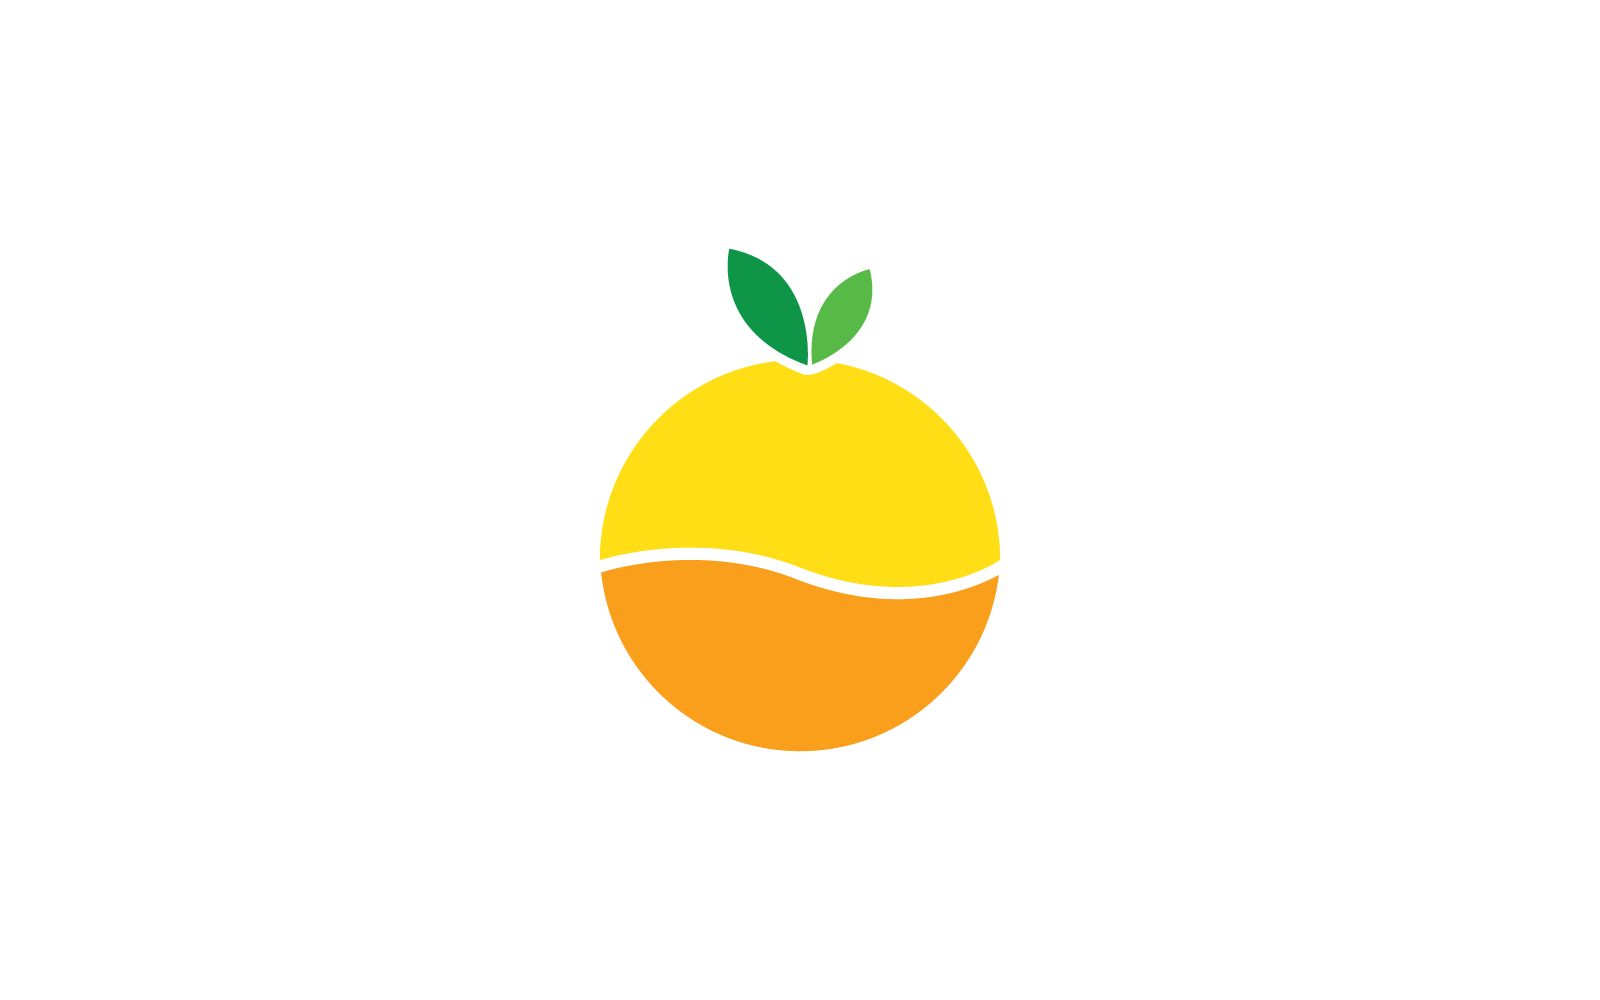 Orangenfrucht-Logo, Vektor-flaches Design